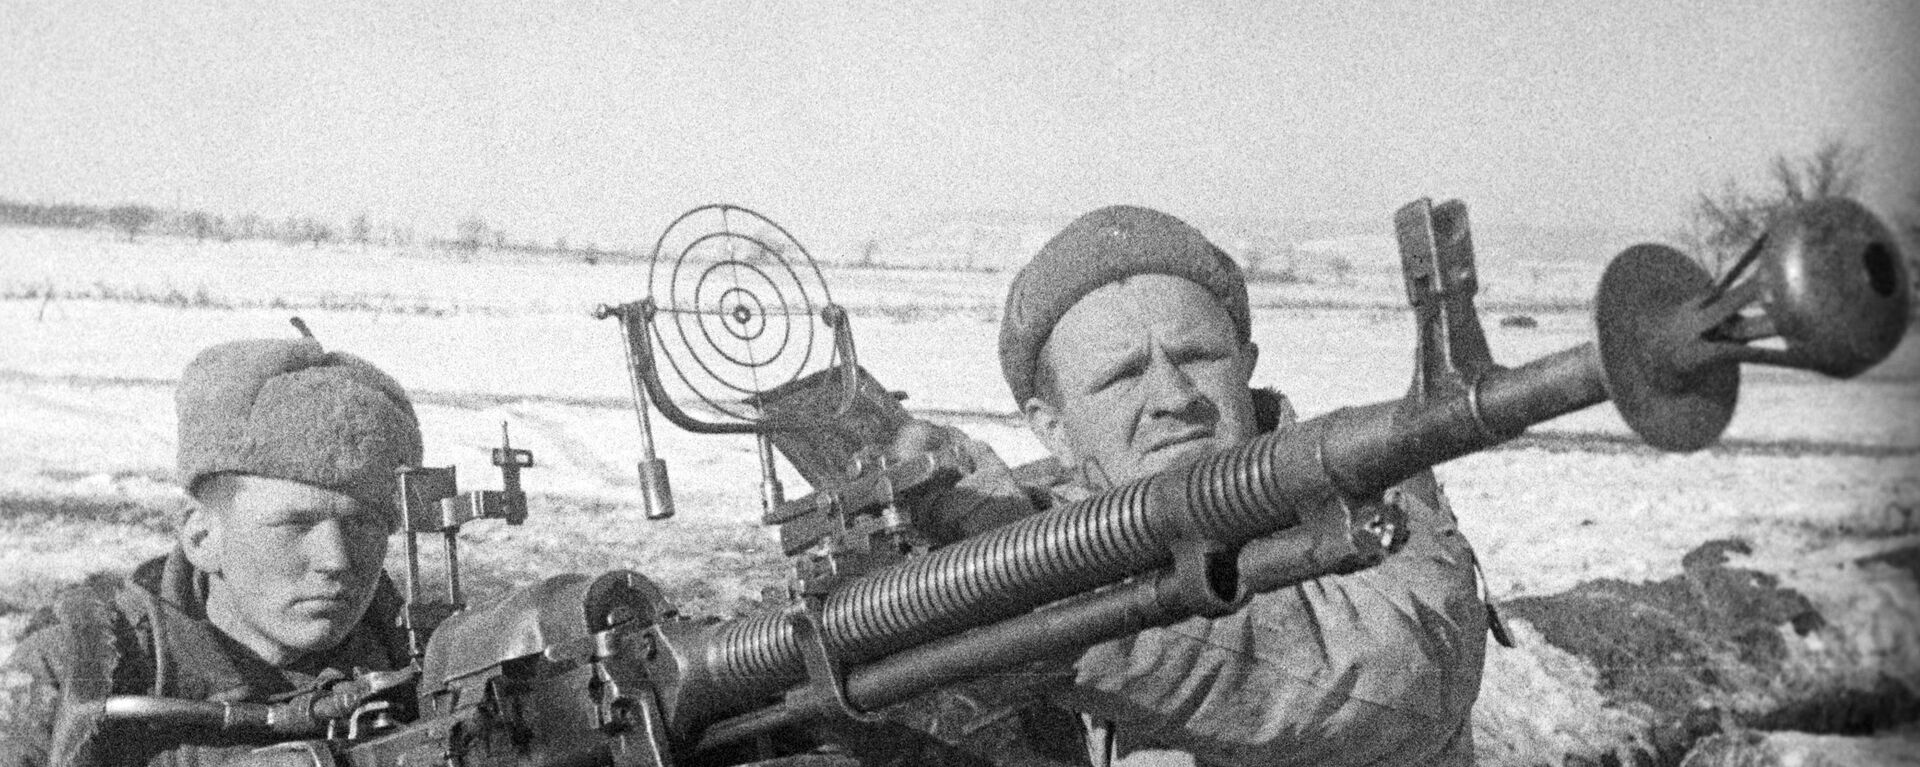 Los efectivos de la defensa antiaérea soviética durante la Segunda Guerra Mundial - Sputnik Mundo, 1920, 08.05.2020